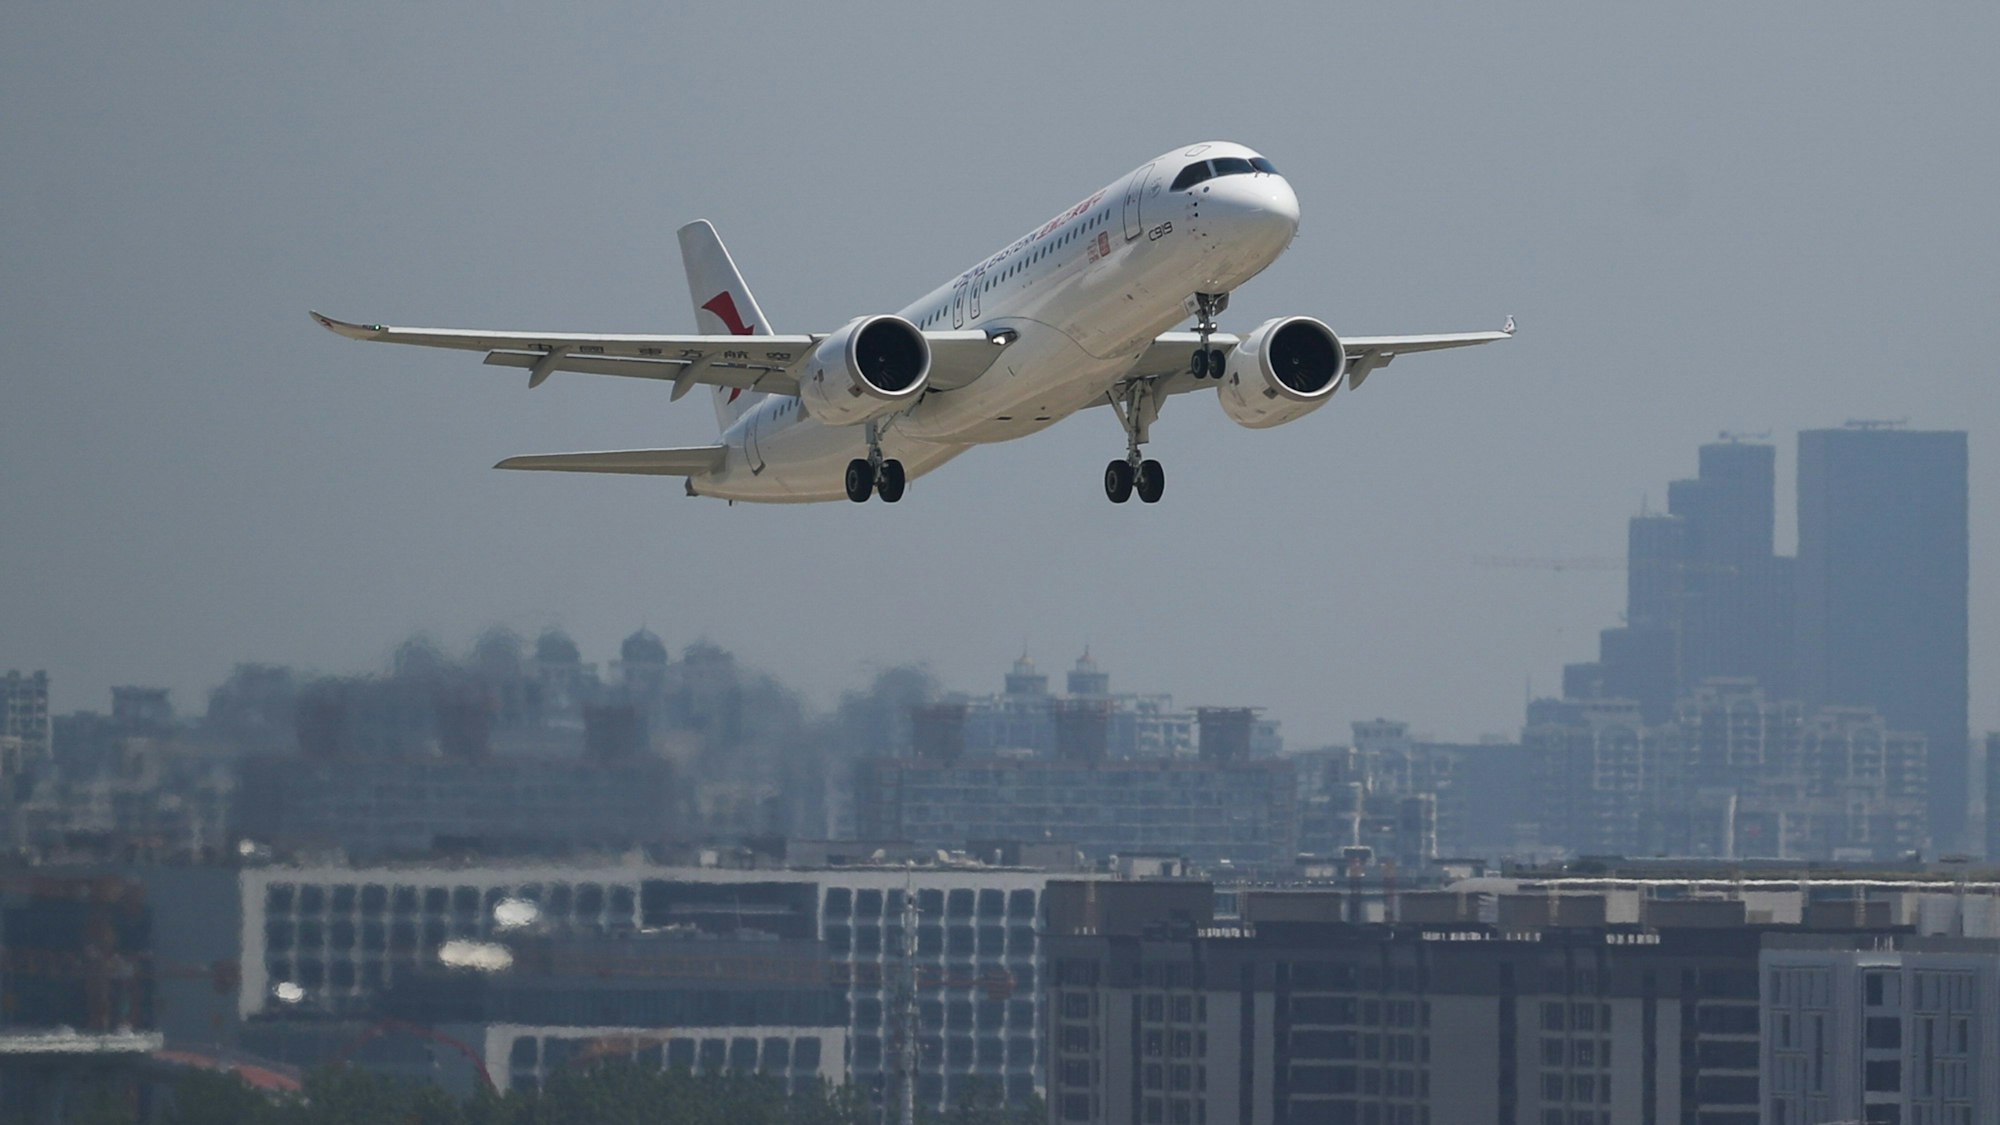 Ein großes Passagierflugzeug von China Eastern Airlines vom Typ C919, Chinas erstes selbst entwickeltes Großraumflugzeug, hebt vom internationalen Flughafen Shanghai Hongqiao ab.